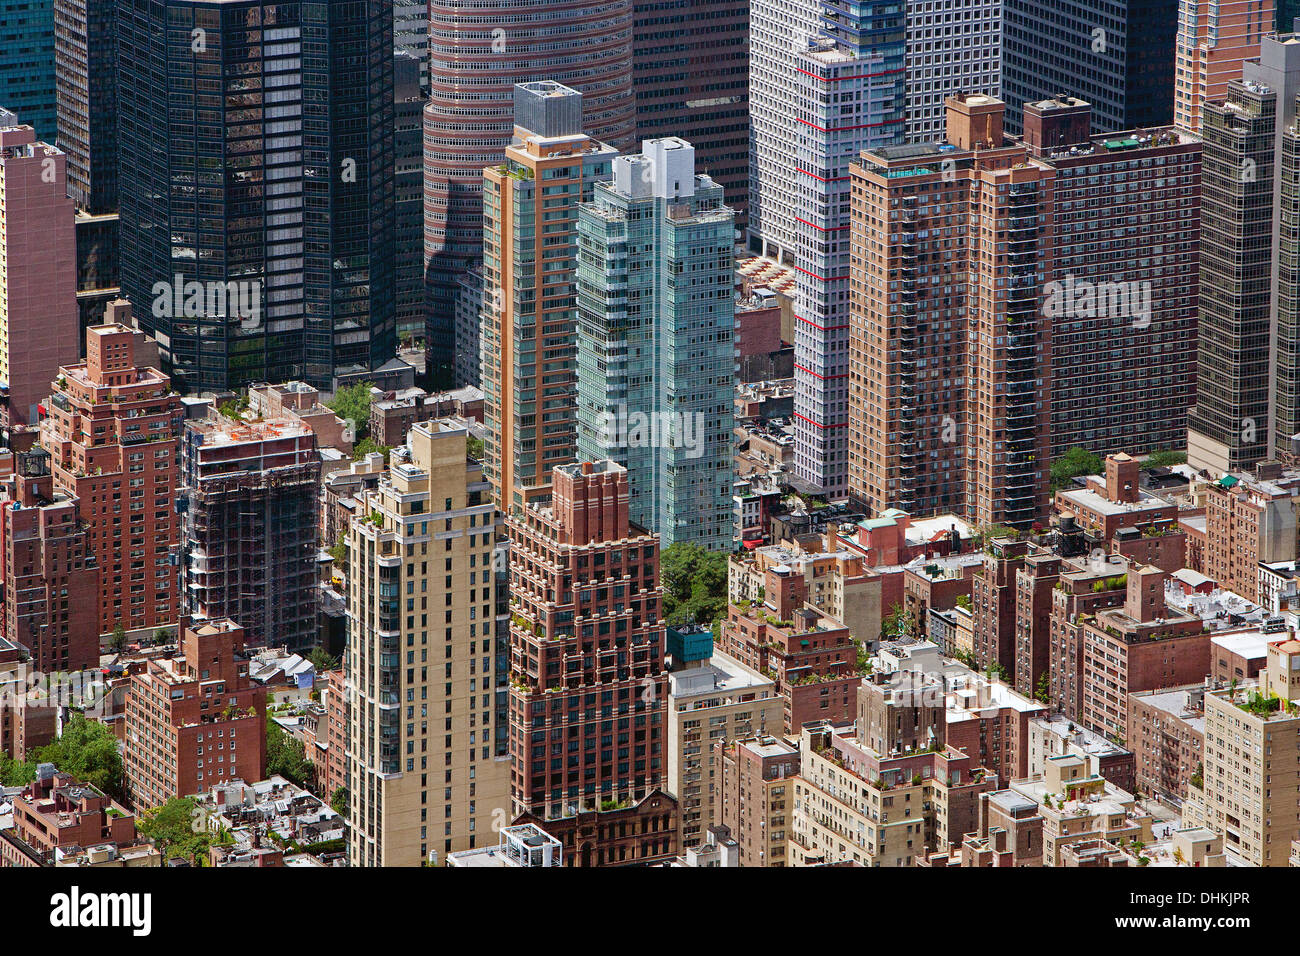 Photographie aérienne du côté est et de hauts immeubles résidentiels de midtown Manhattan, New York City Banque D'Images